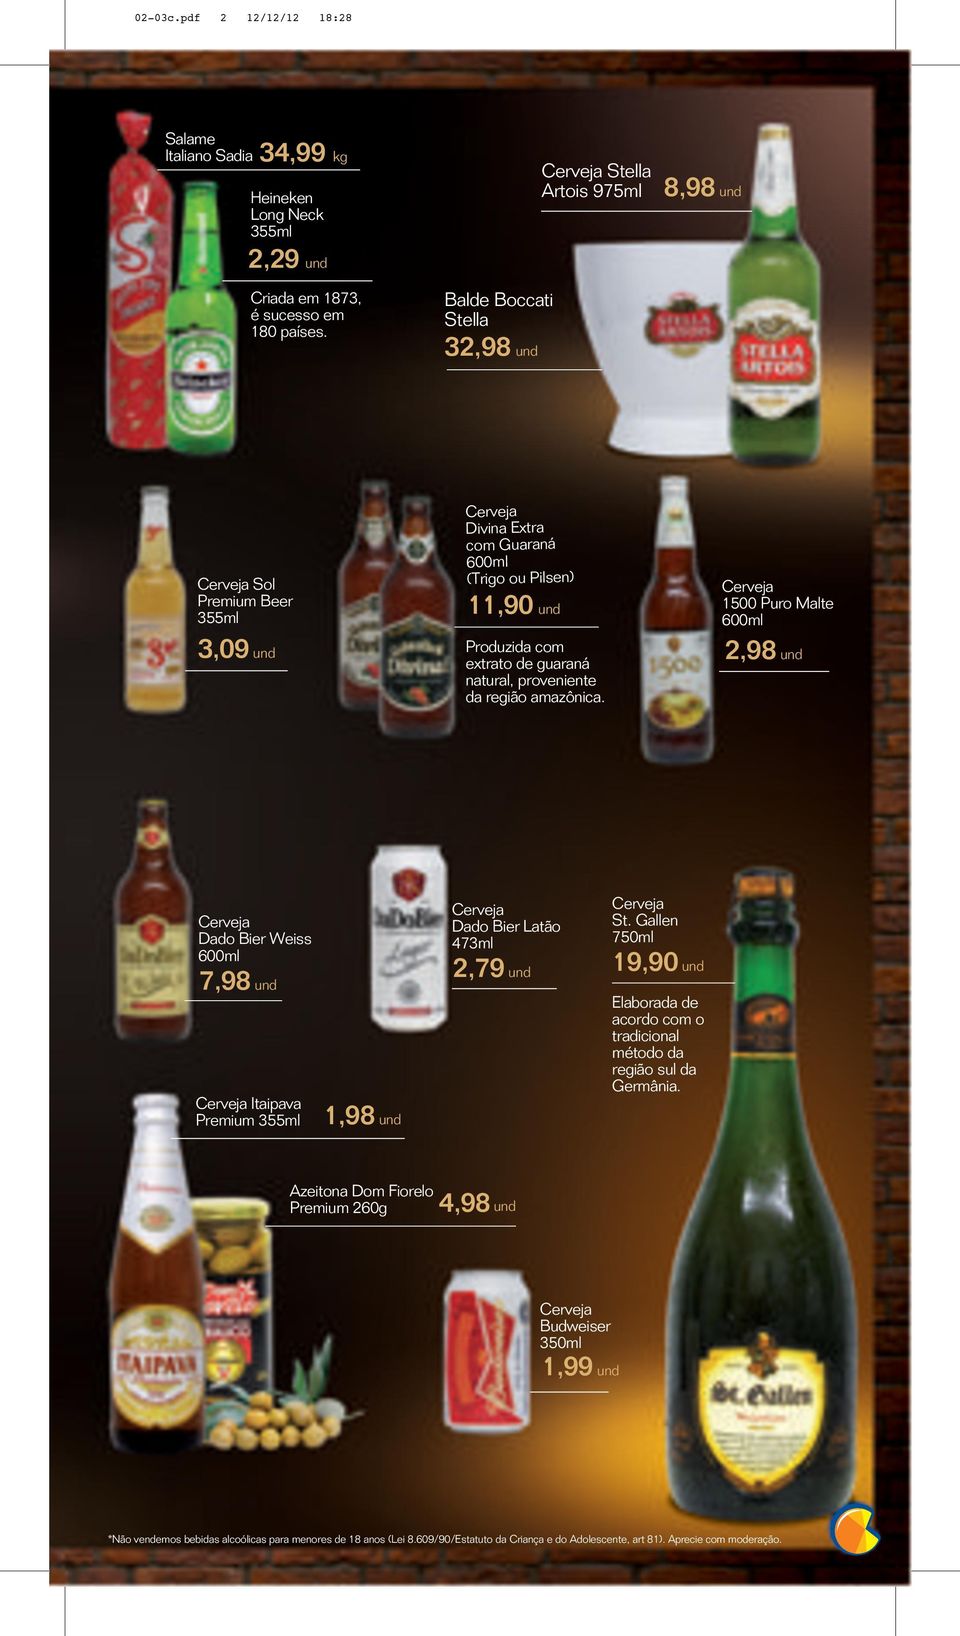 Sol Premium Beer 55ml,09 und Divina Extra com Guaraná (Trigo ou Pilsen),90 und Produzida com extrato de guaraná natural, proveniente da região amazônica.